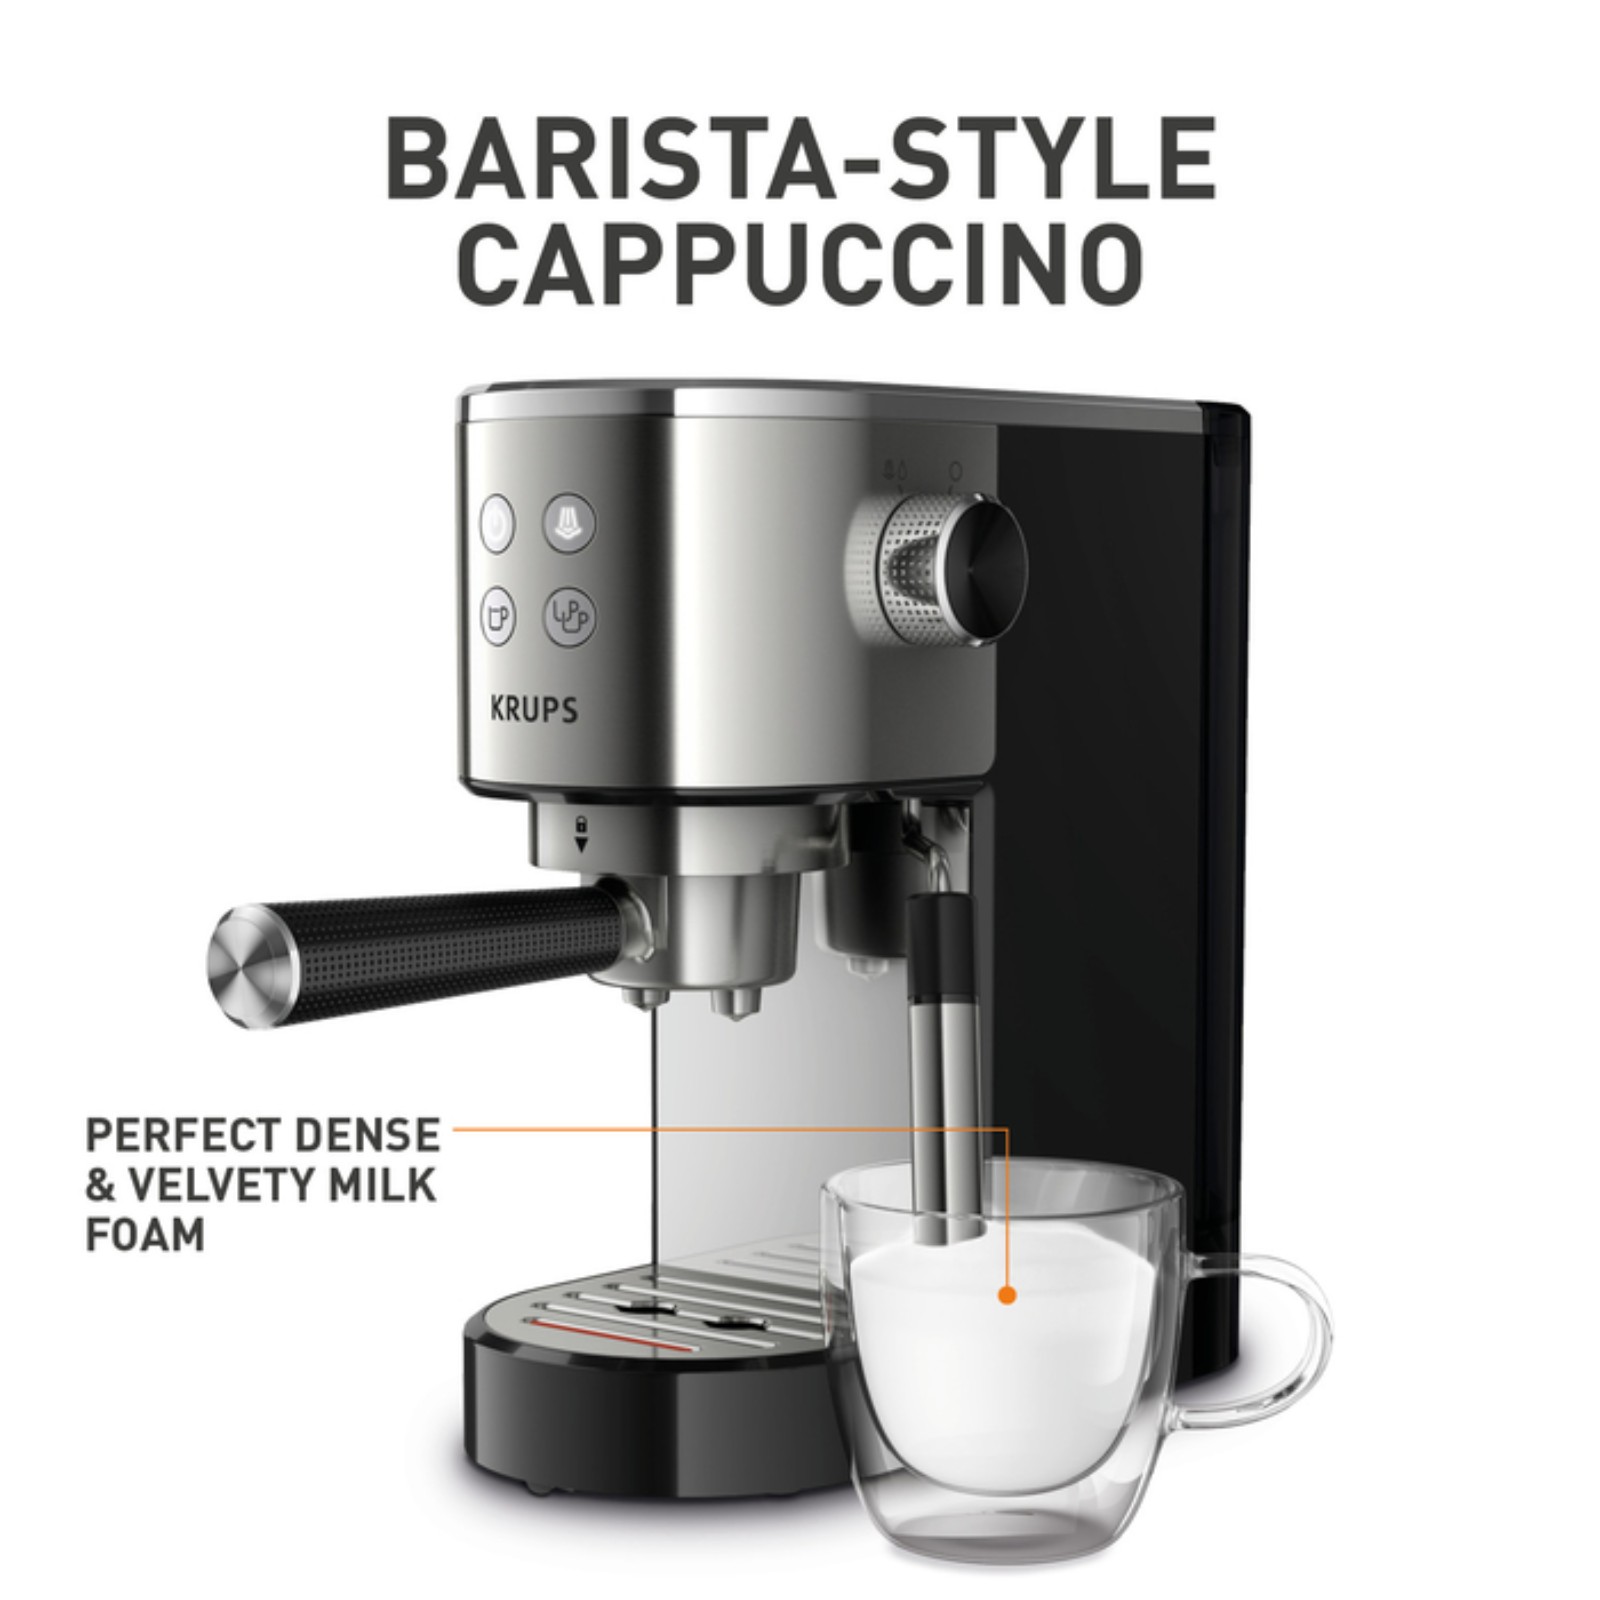 Krups Virtuoso XP442C11 coffee machine Semi automatic espresso